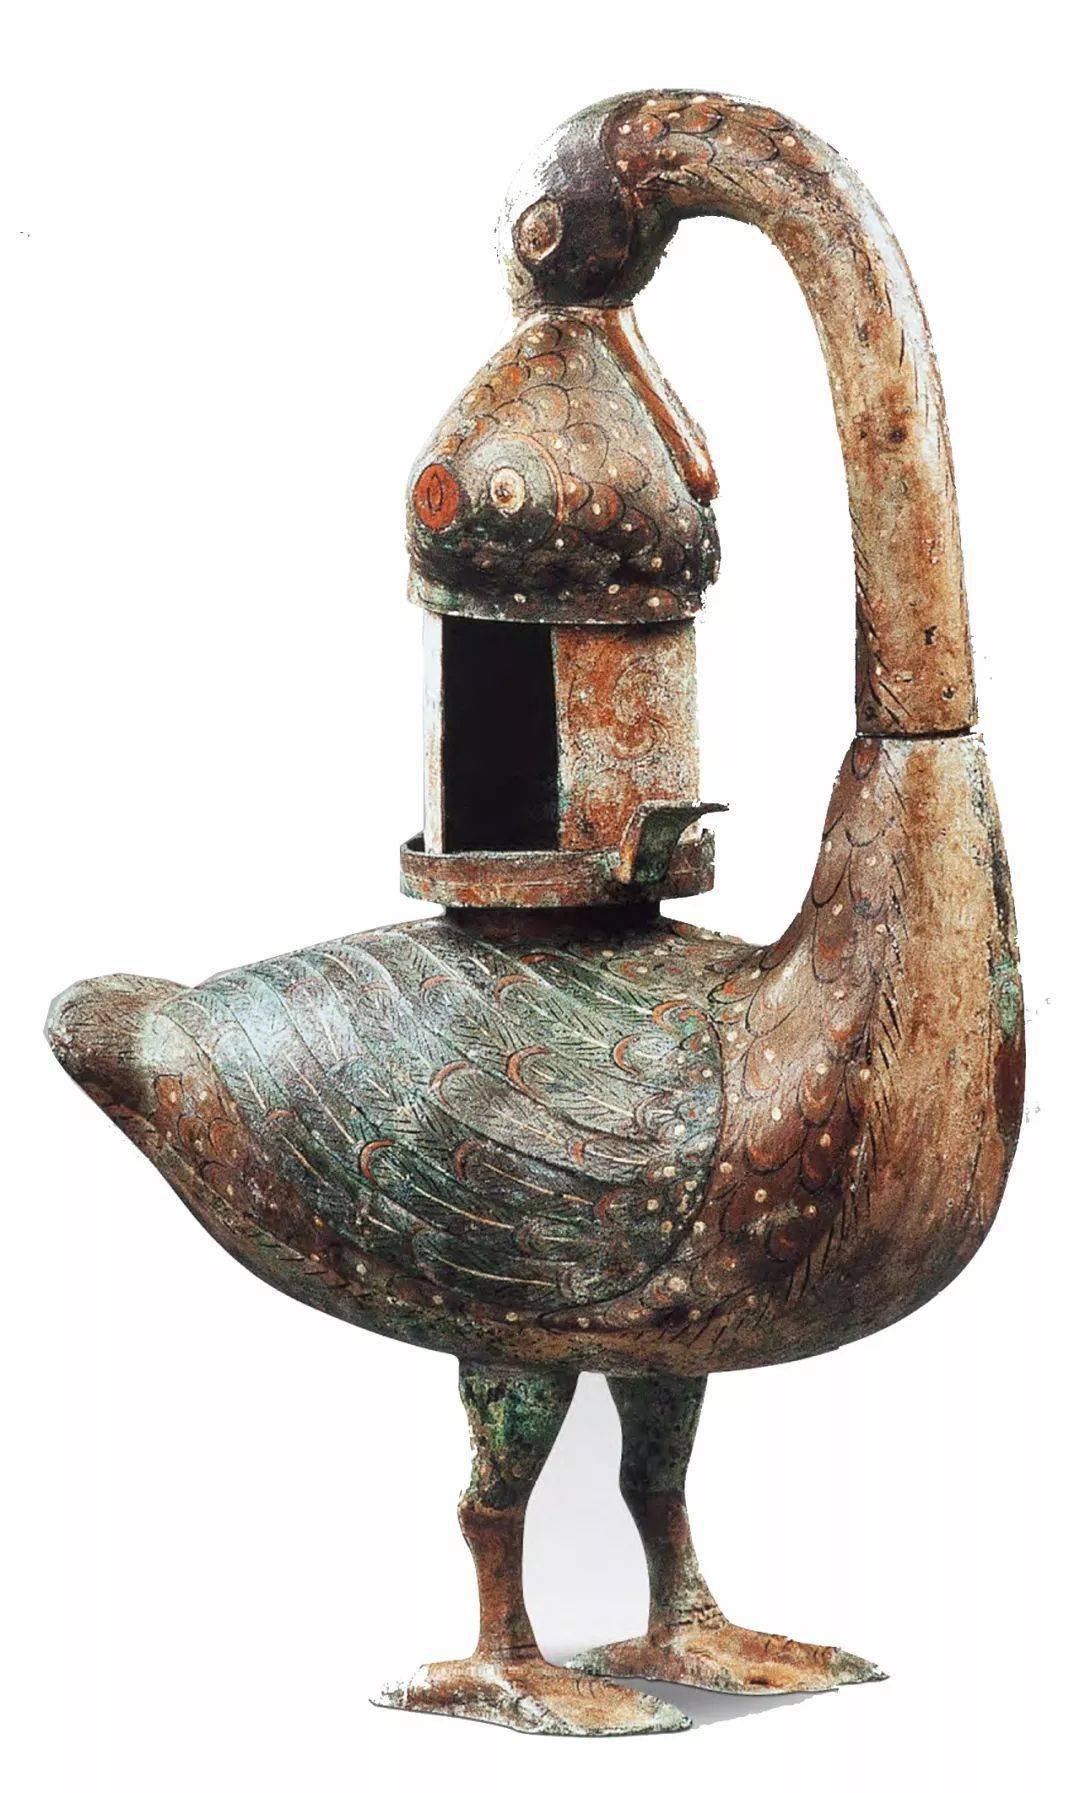 这盏雁鱼铜灯用青铜铸造而成,通高53厘米,出土于1983年山西朔县西汉墓